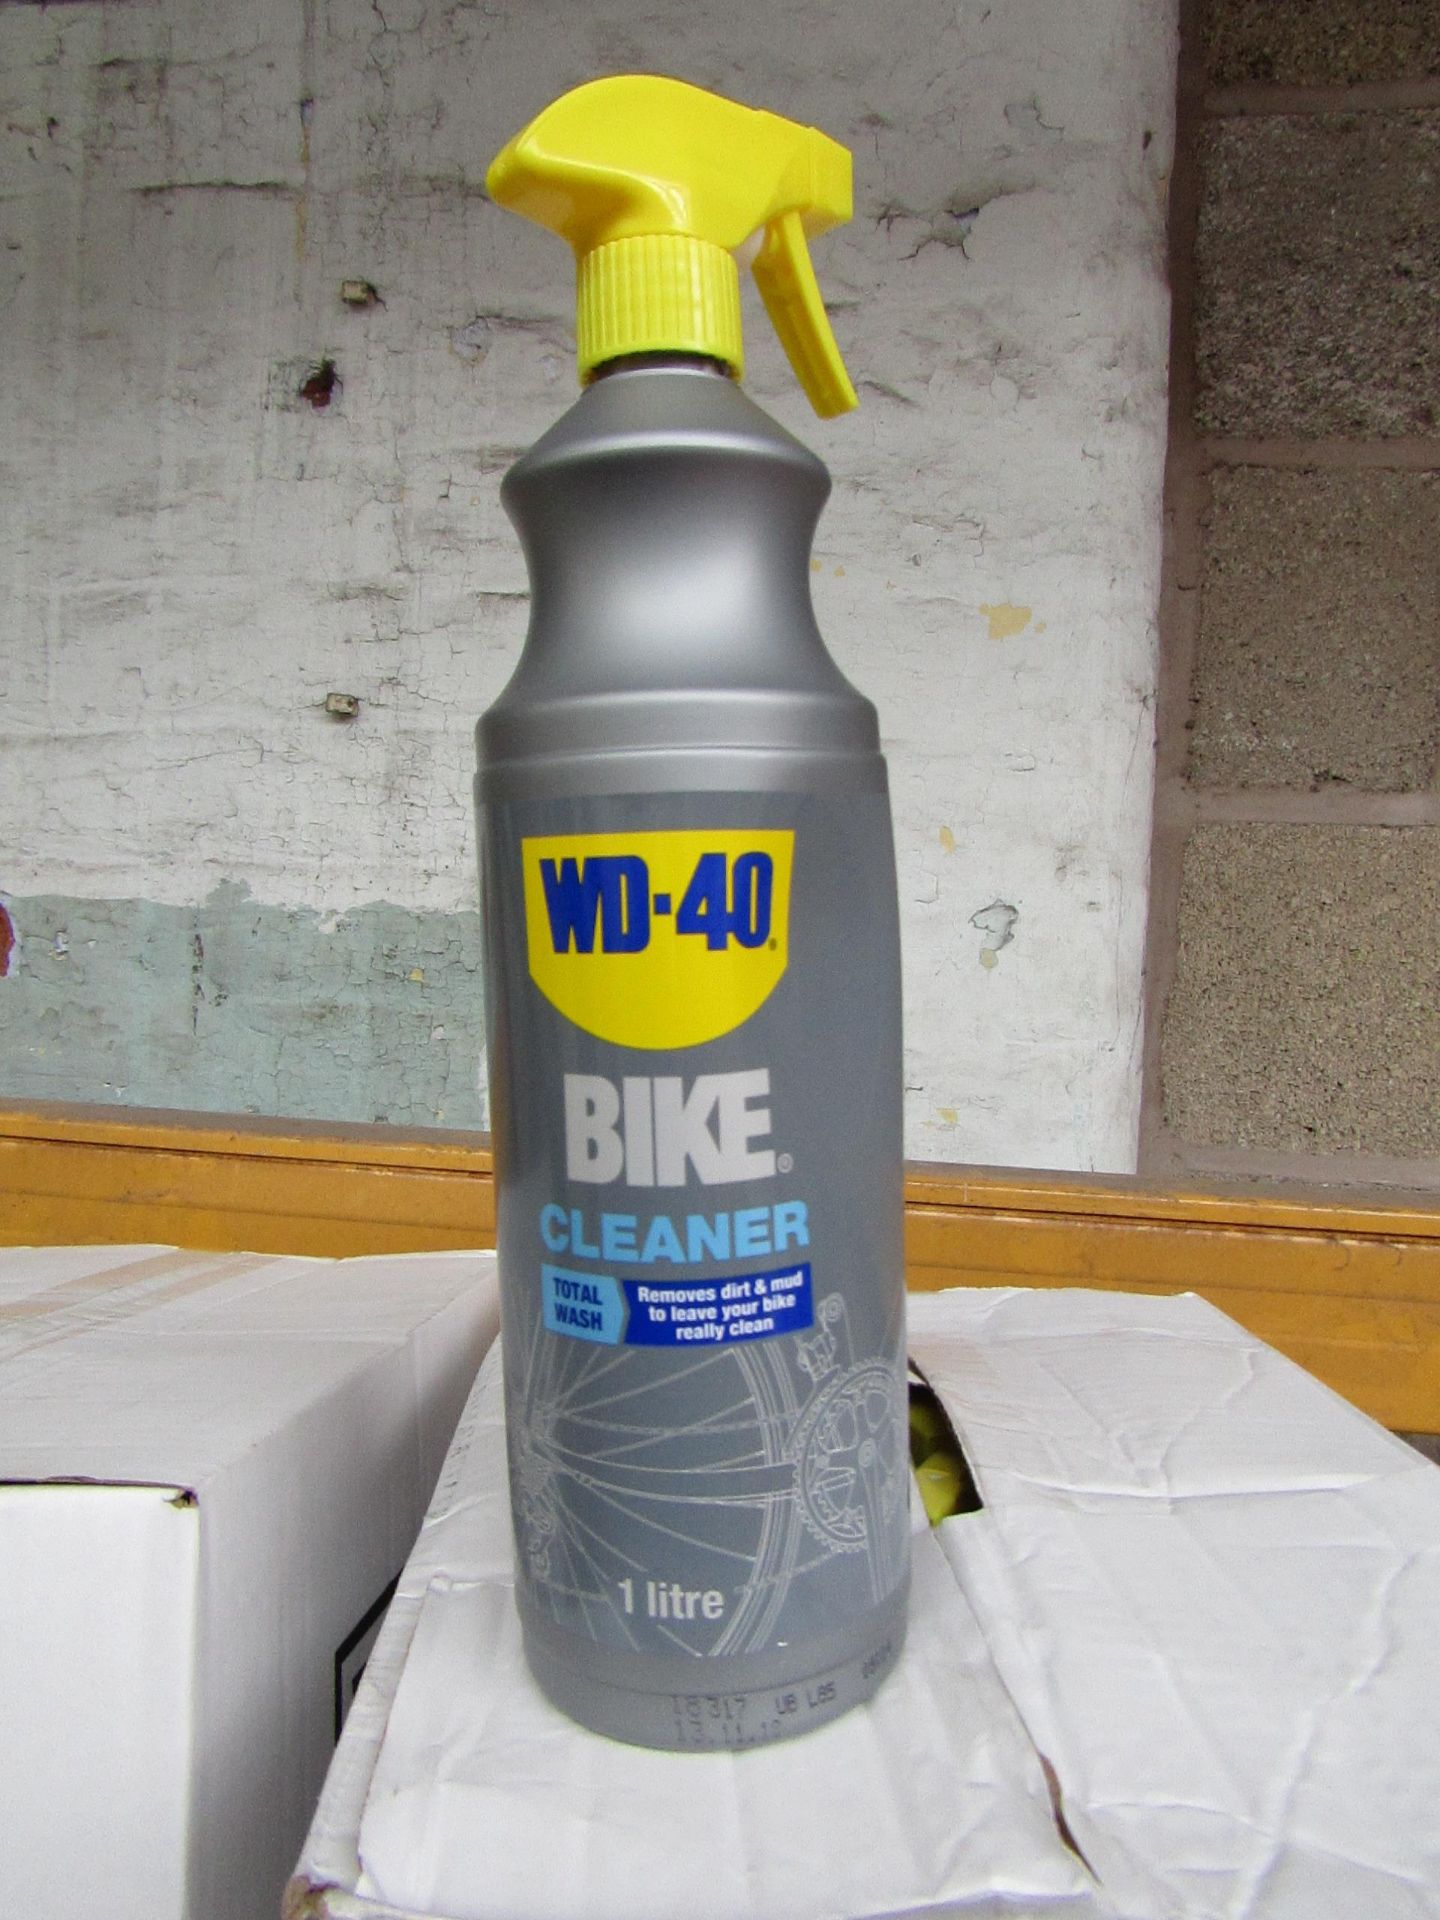 4x 1ltr spray bottles of WD40 Bike Cleaner, new